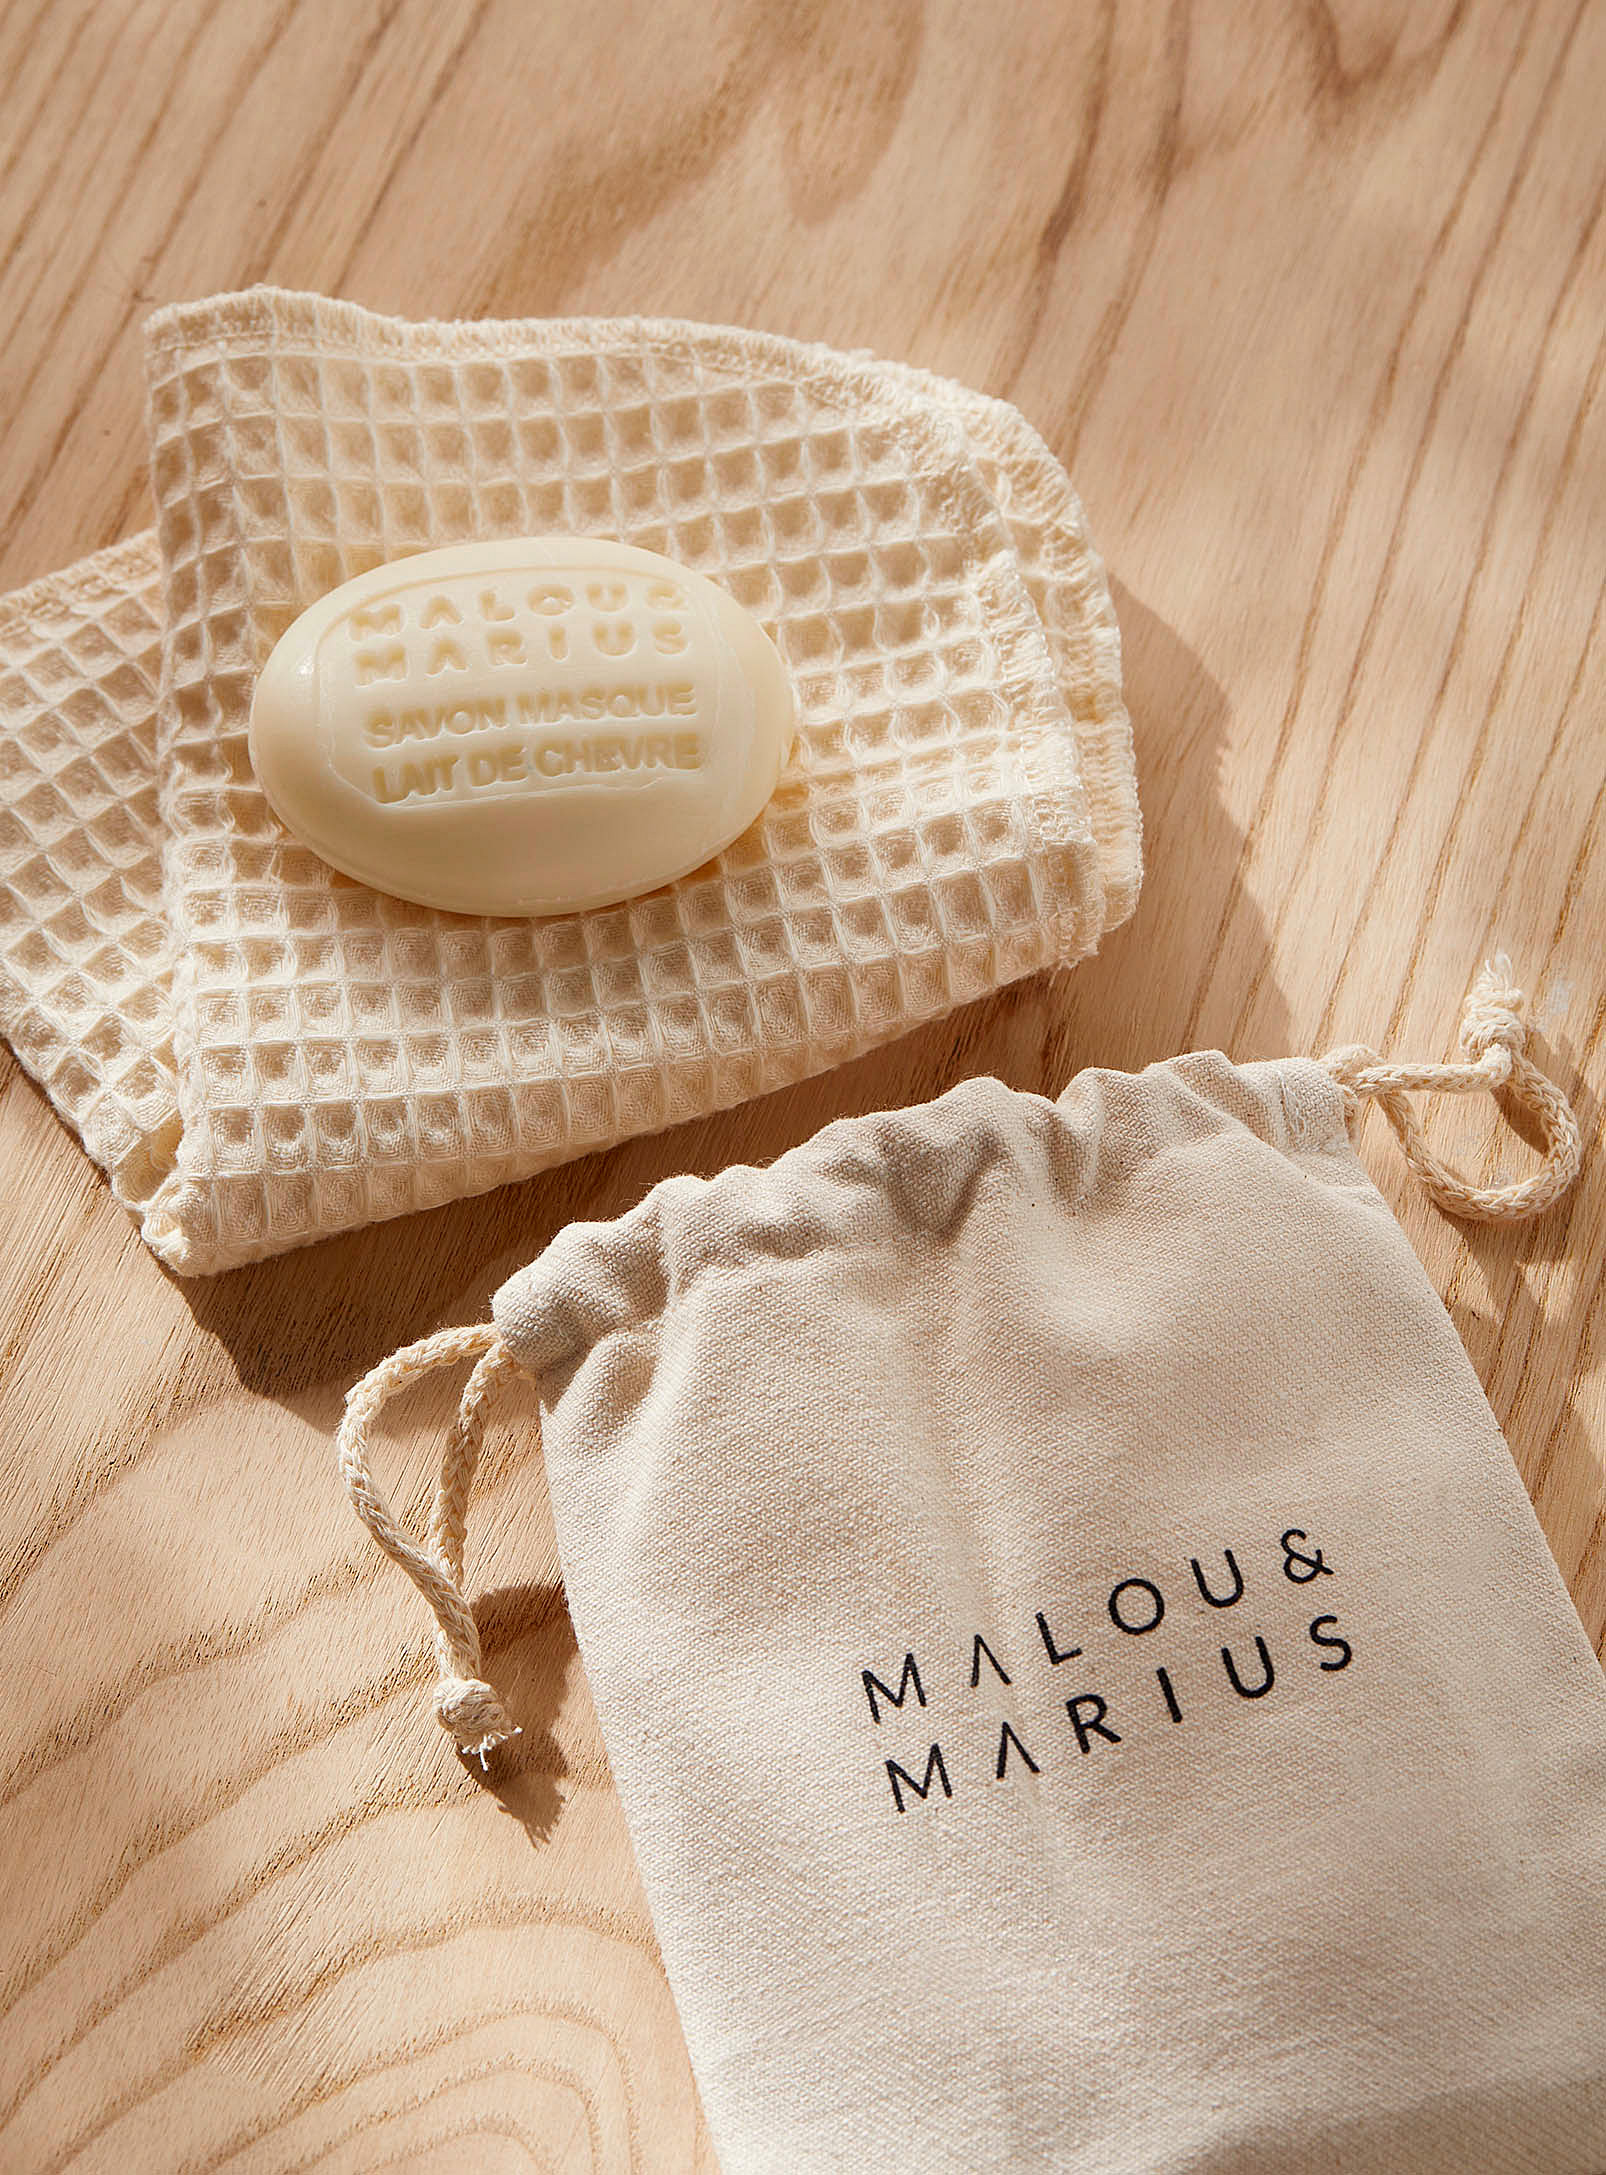 Malou & Marius - Face soap mask and towel set